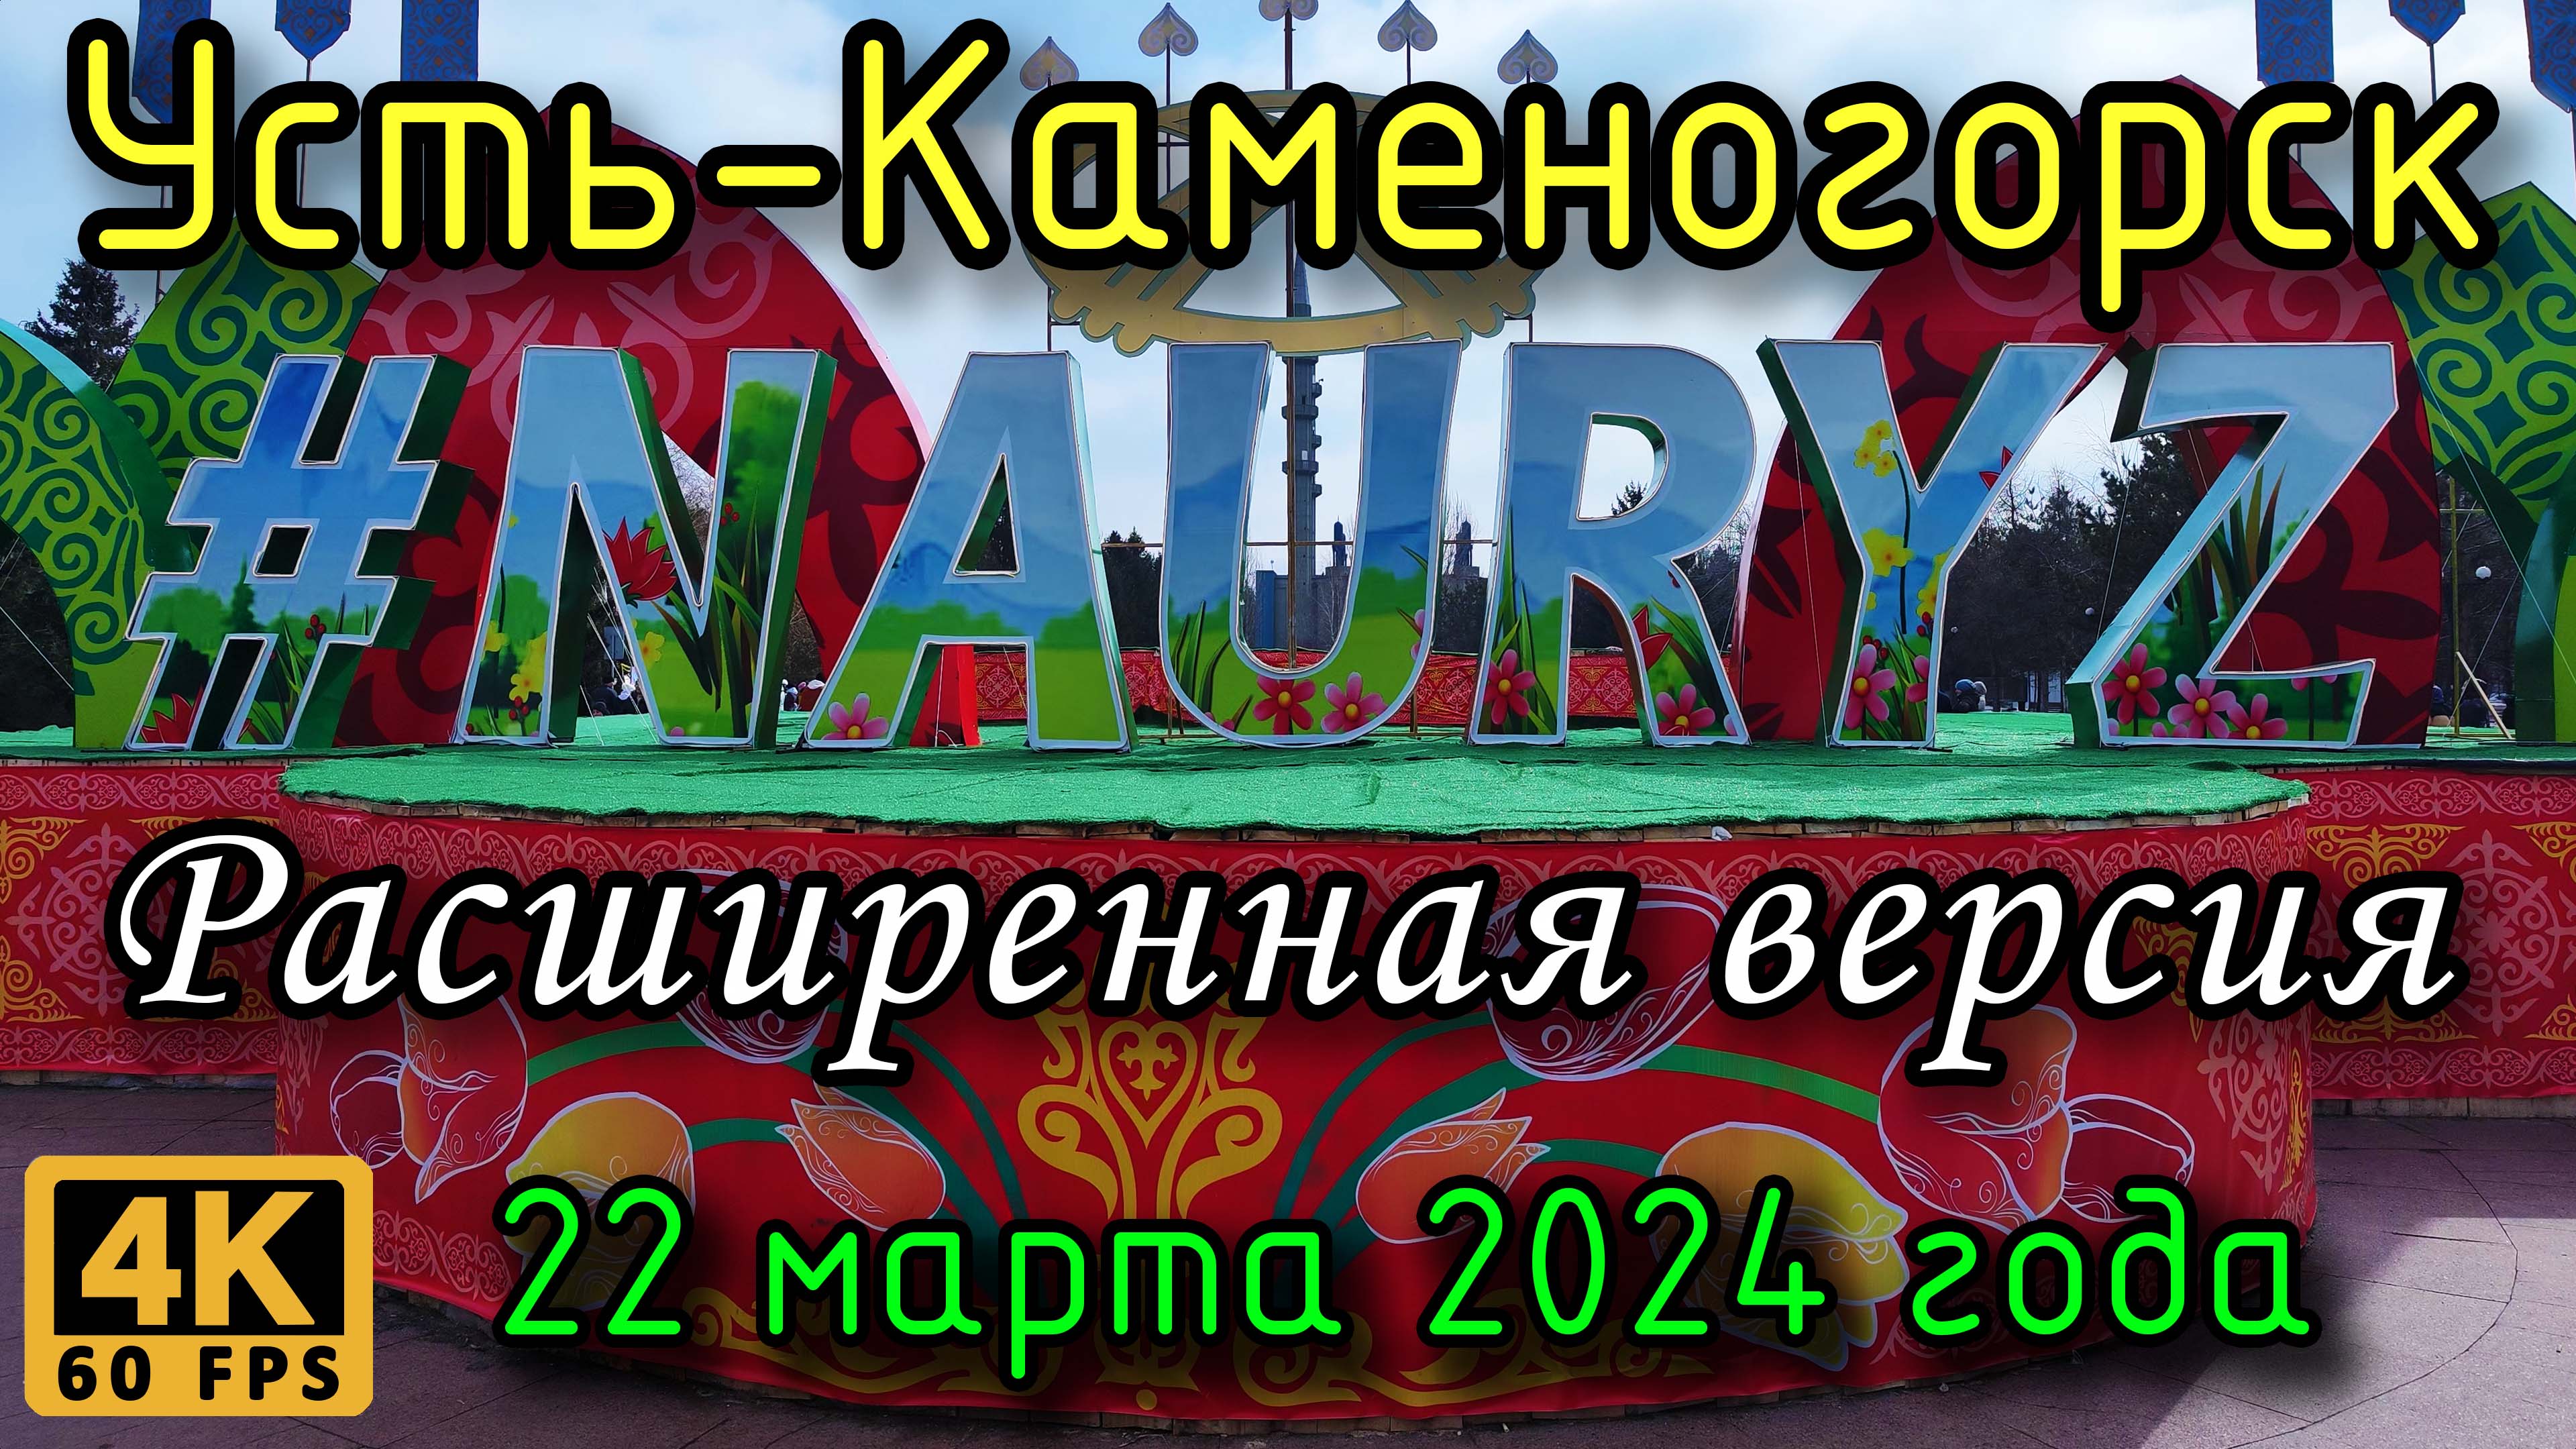 Усть-Каменогорск: Наурыз на пл.Республики (расширенная версия) в 4К. 22 марта 2024 года.